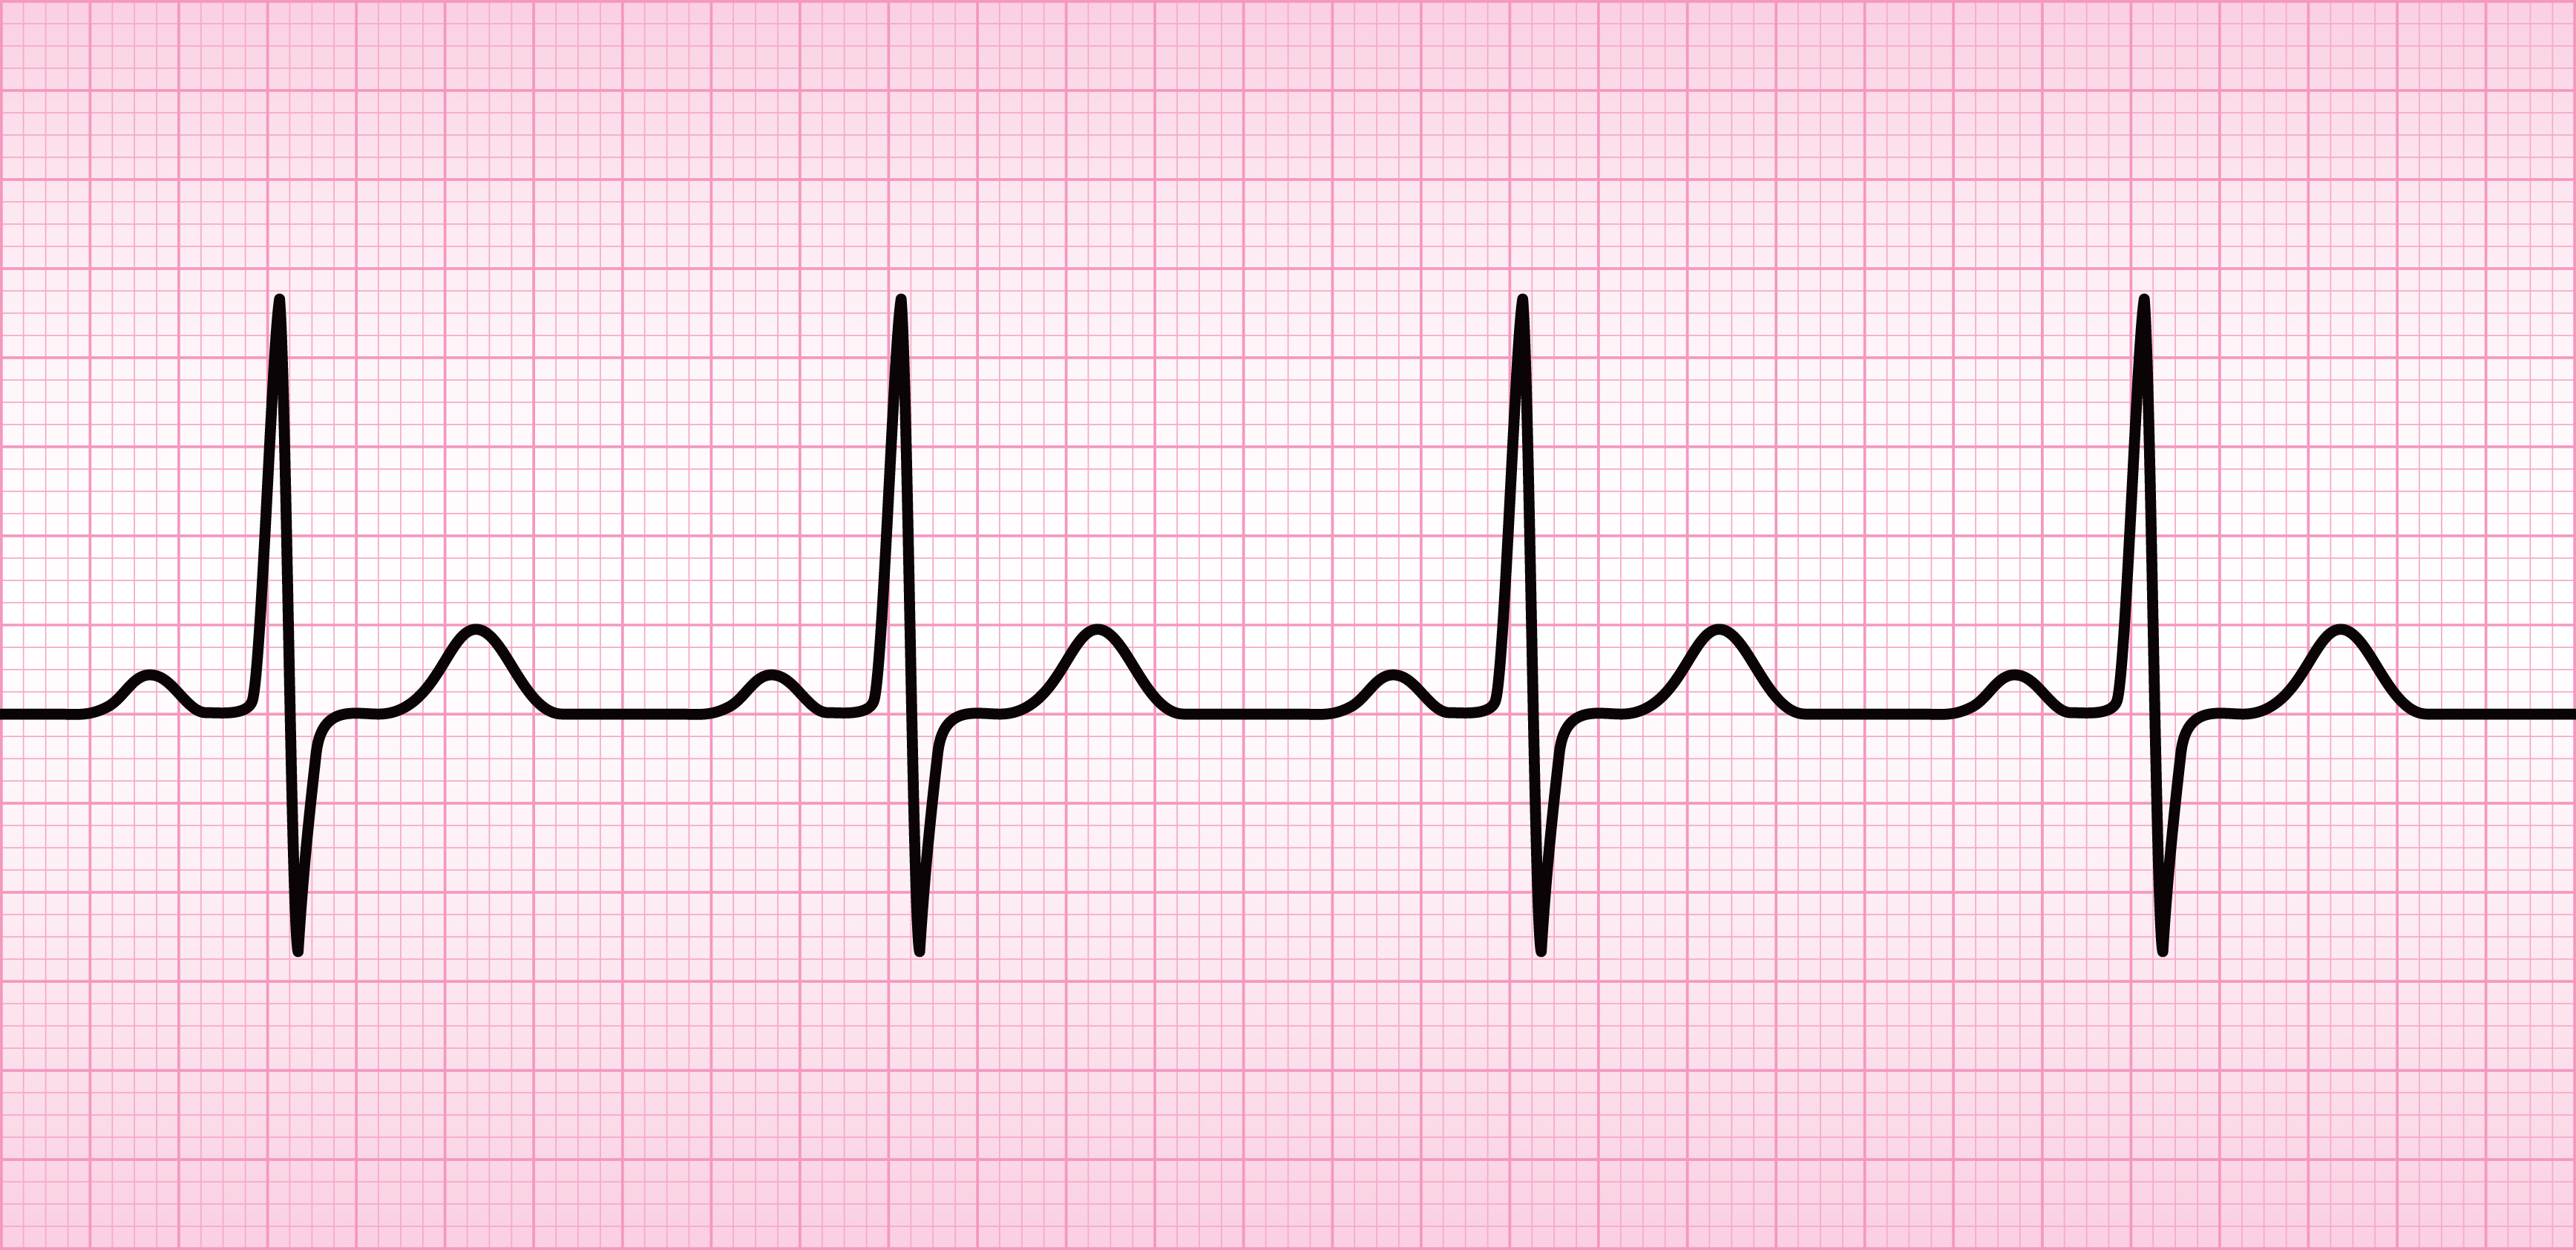 фото здоровой кардиограммы сердца